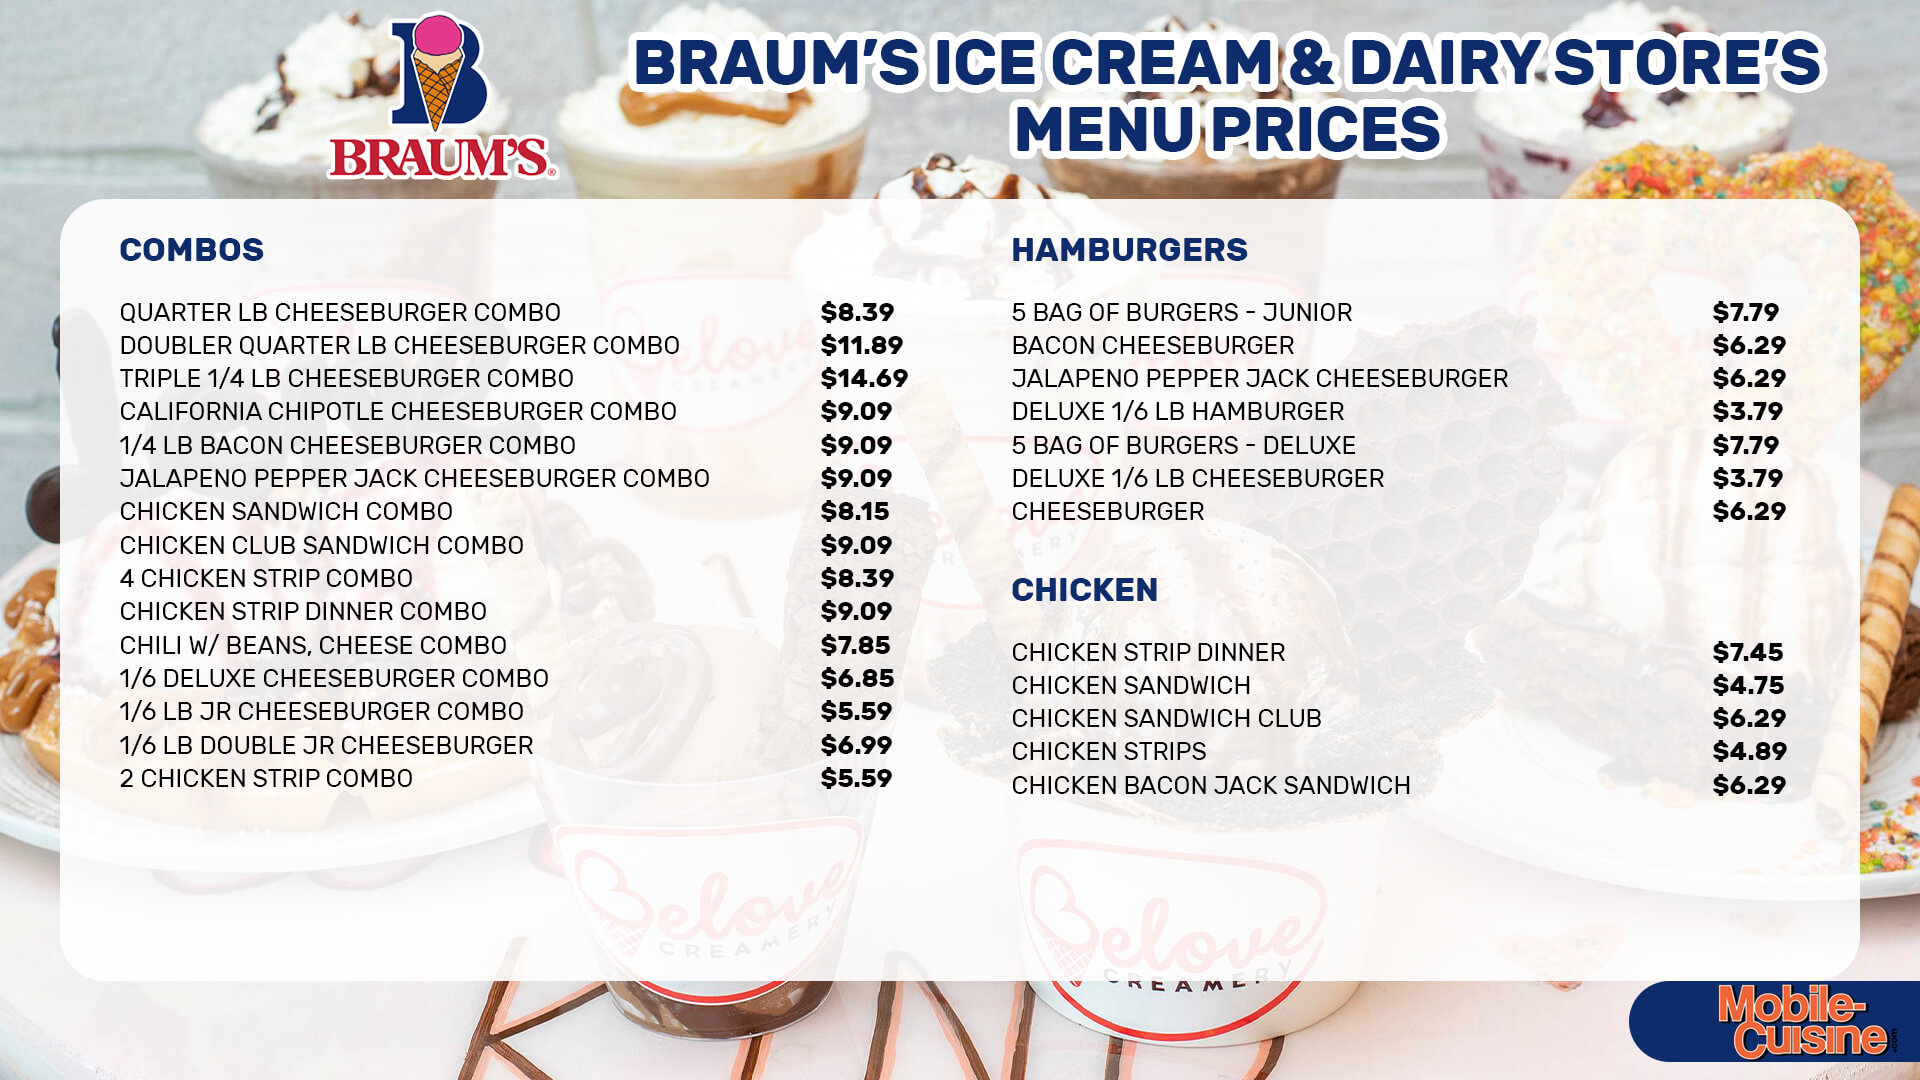 Braum’s-Ice-Cream-&-Dairy-Store-menu-prices